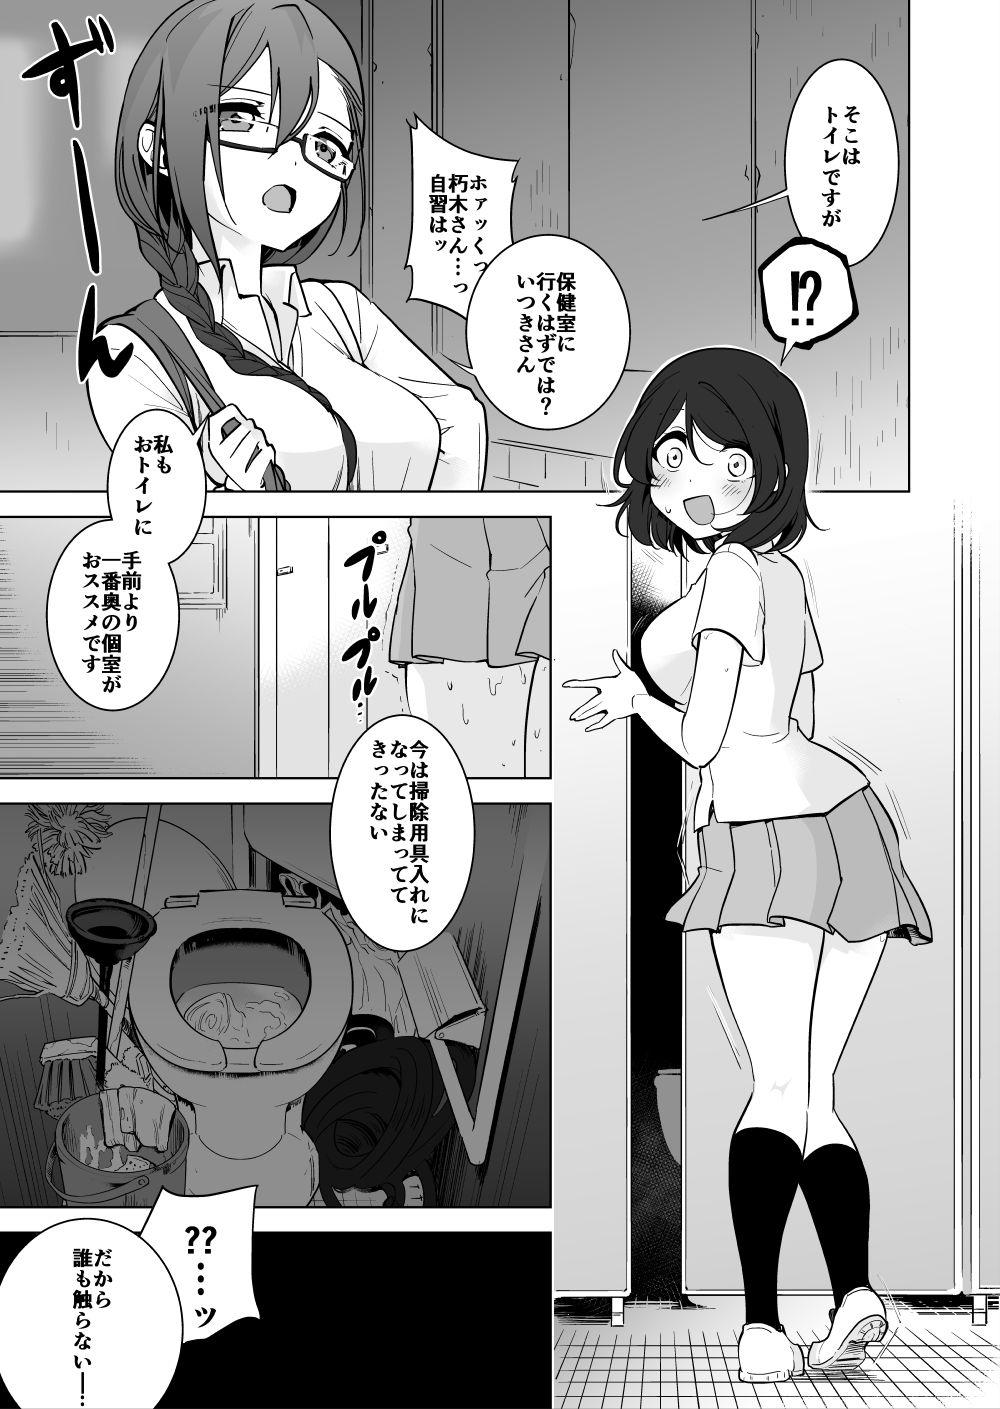 Sexy Girl Gokimesu no inai gakkō toire-hen - Original Webcamsex - Page 1